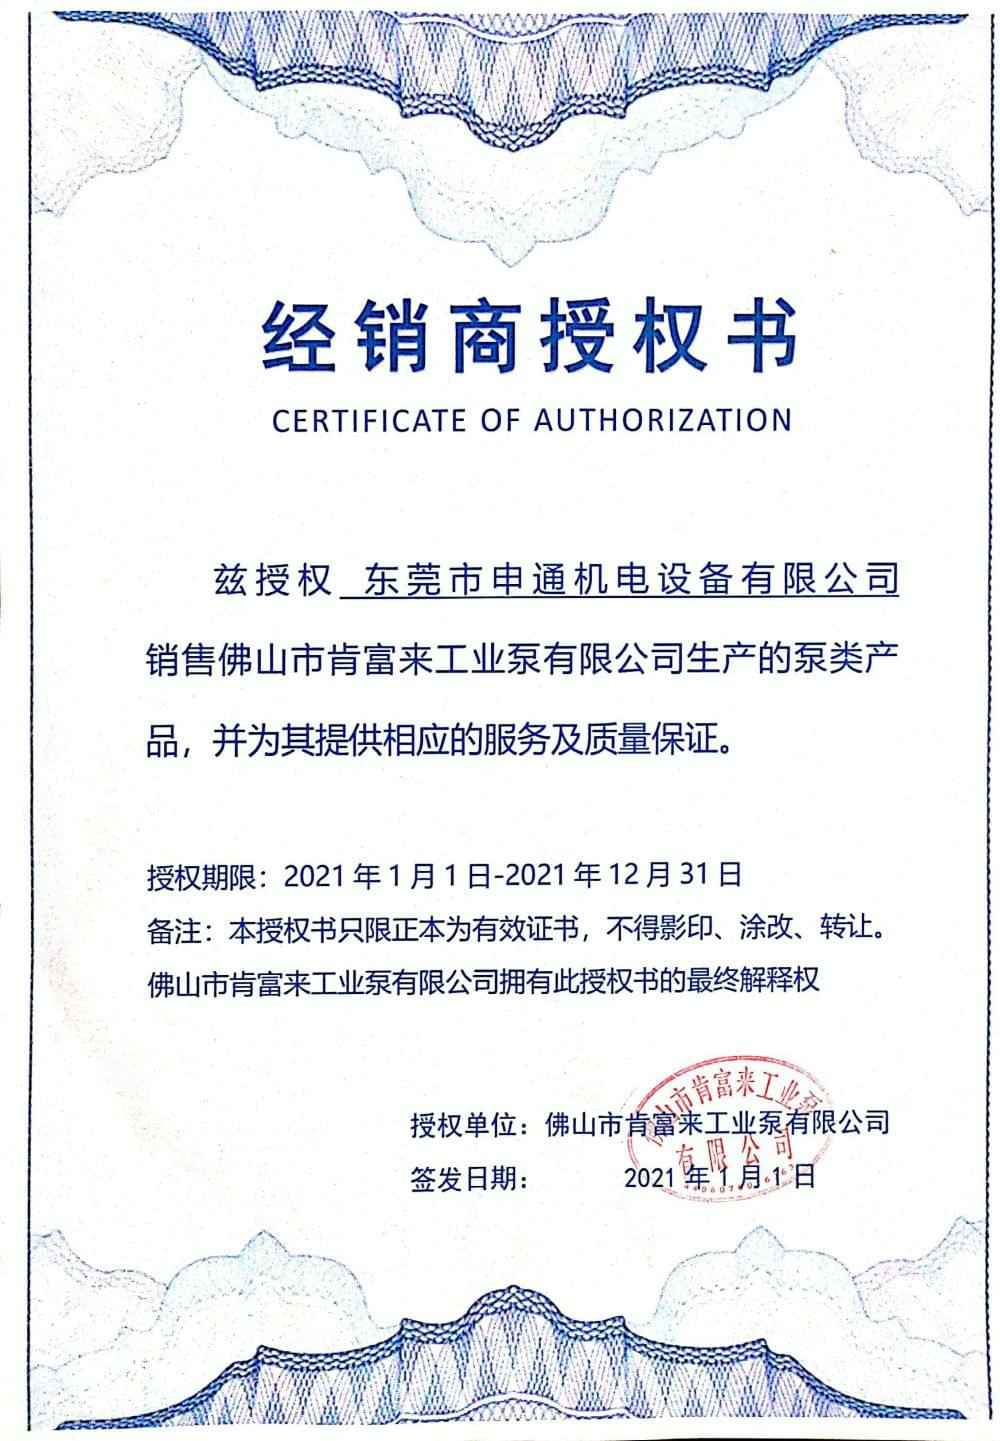 hgα030皇冠(中国)科技有限公司授权书